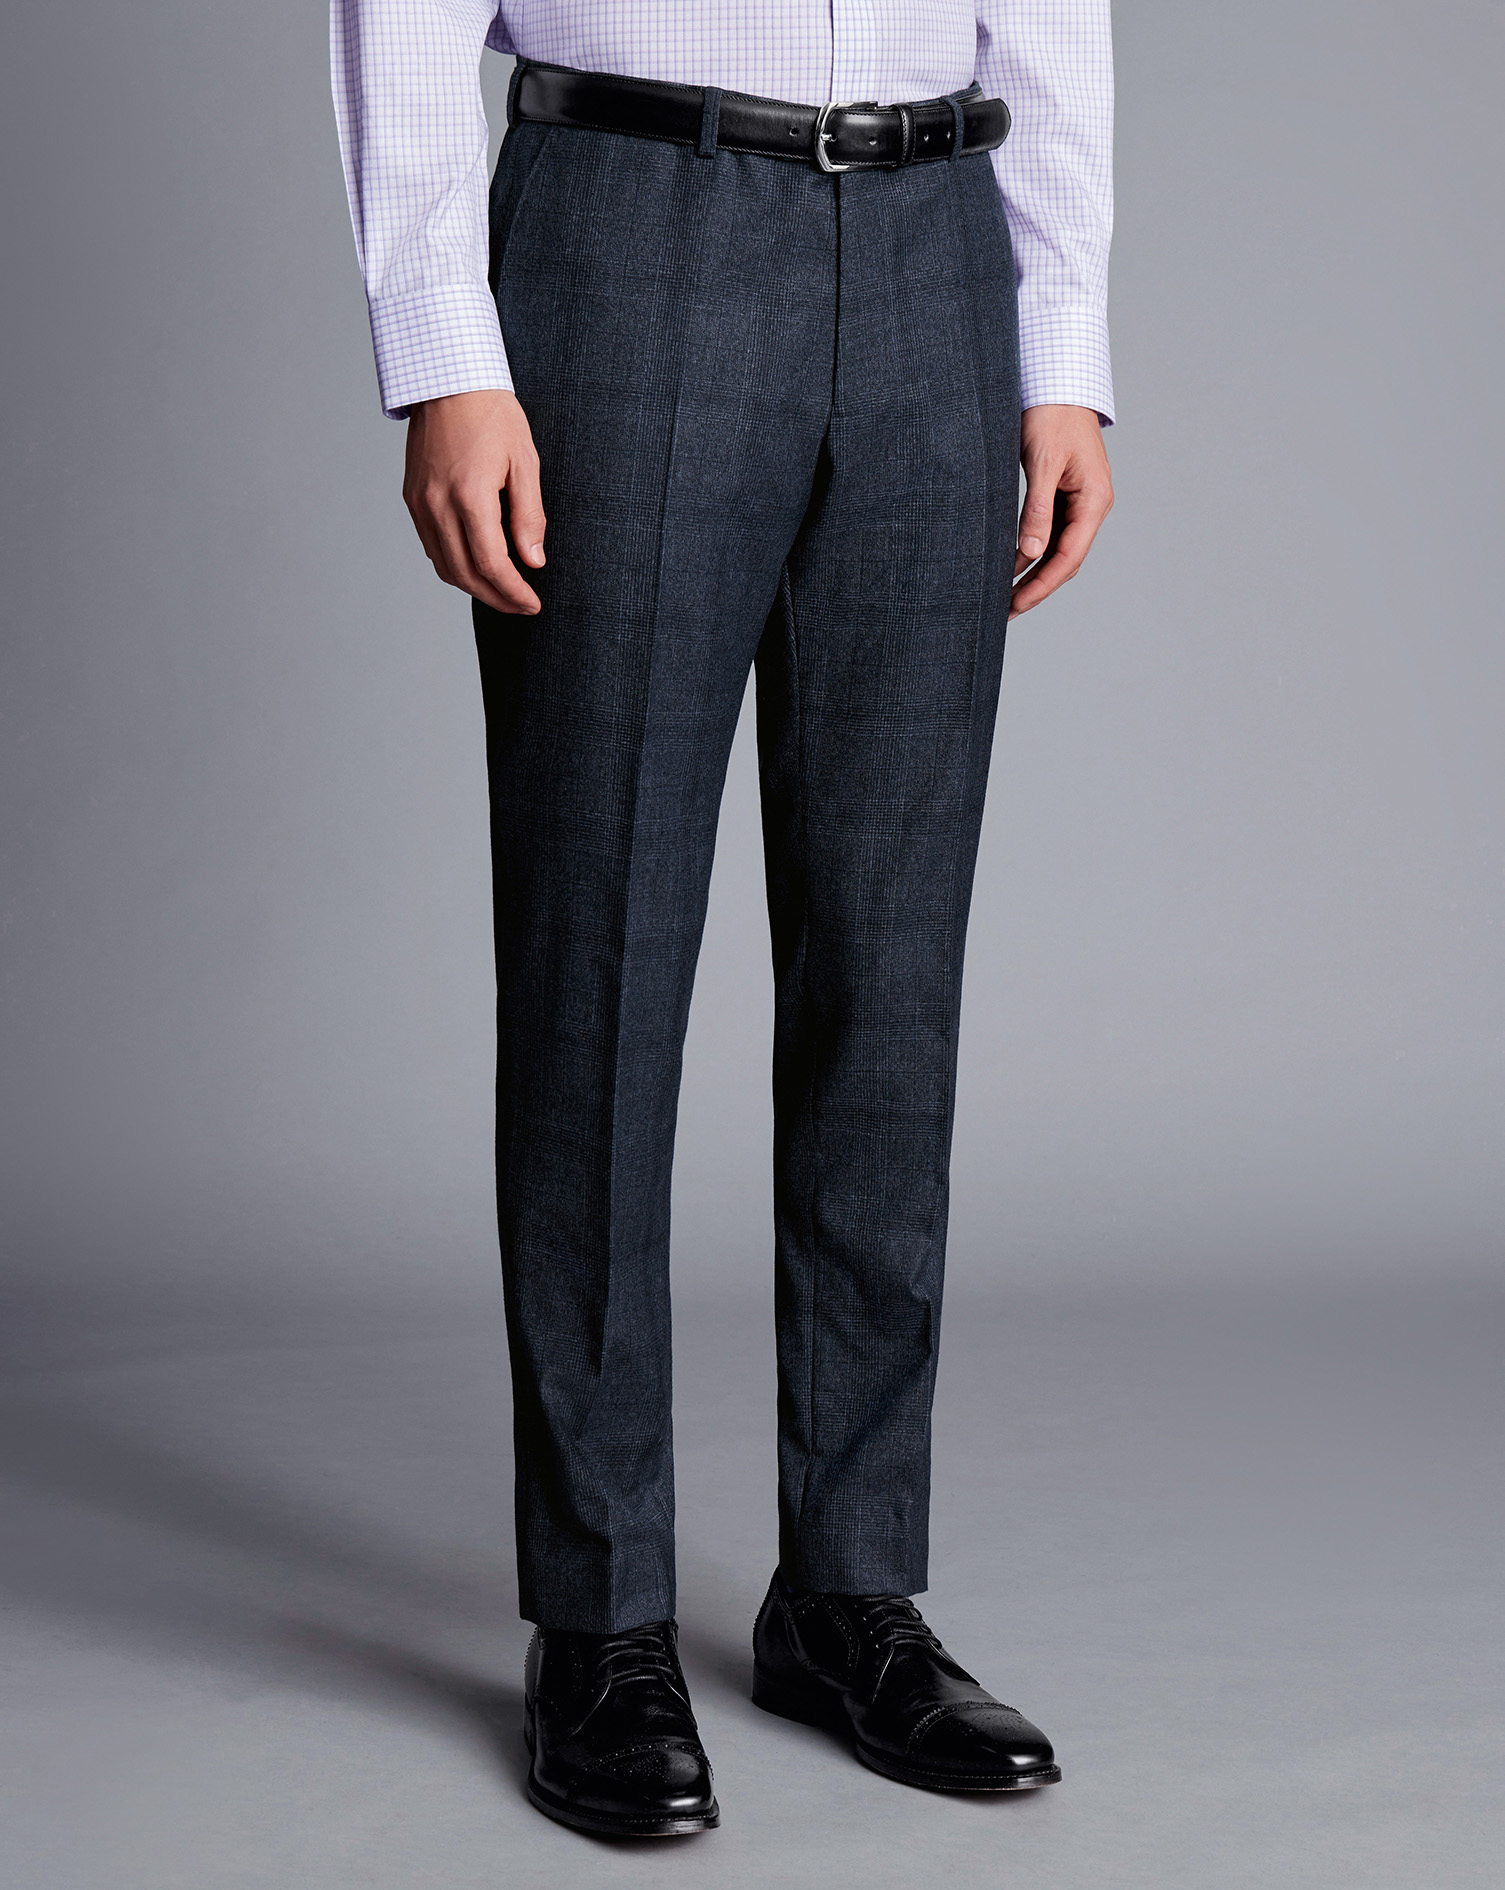 Men's Charles Tyrwhitt Check Suit Trousers - Denim Blue Size 36/32
